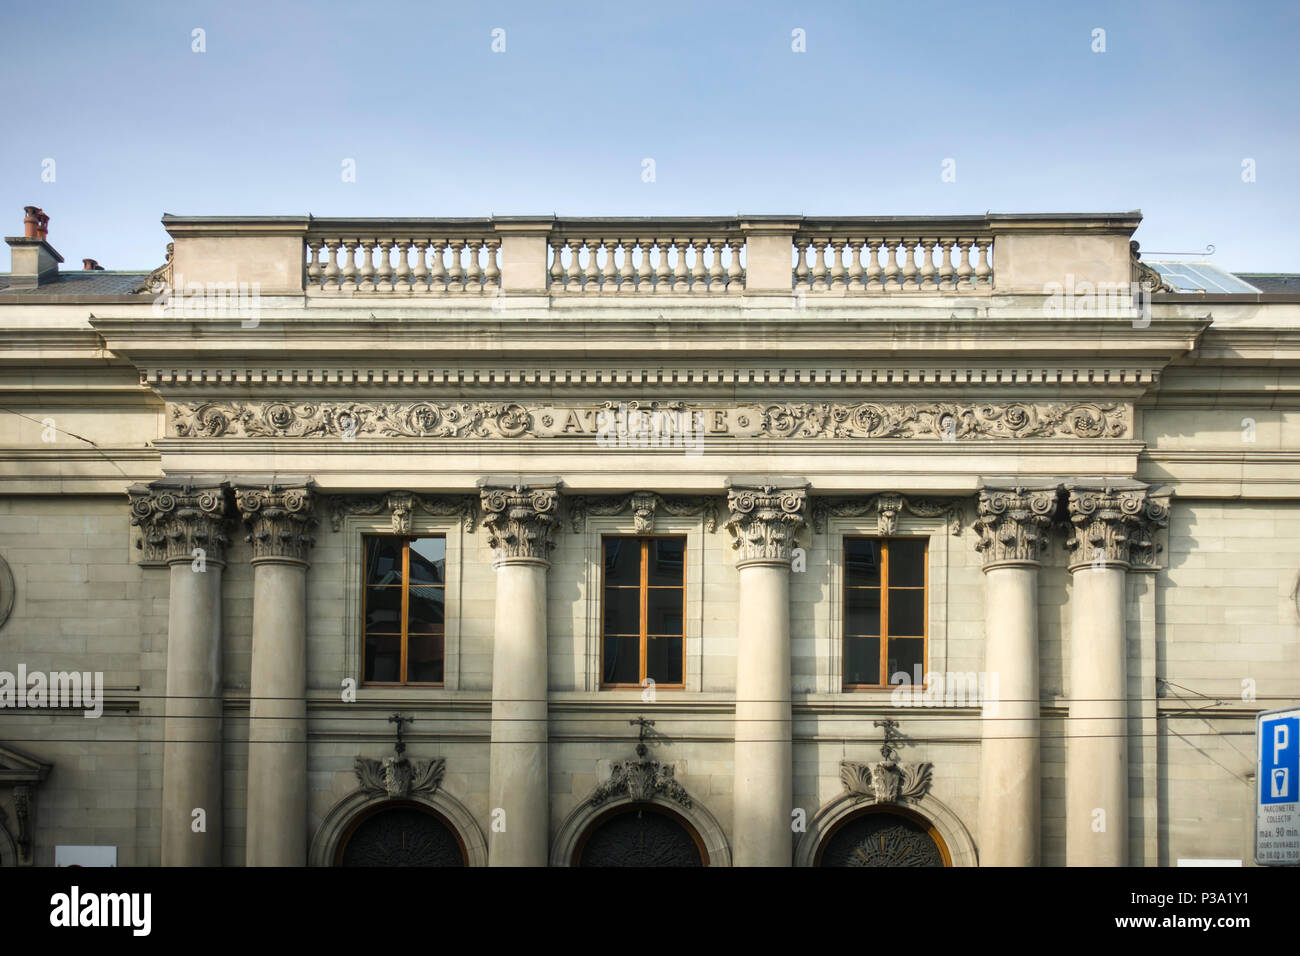 The Palais de l'Athenee, Geneva, Switzerland, designed by G. Diodati et C.-A. Schaeck and built for the Societe des Arts de Geneve, 1860-64. Stock Photo